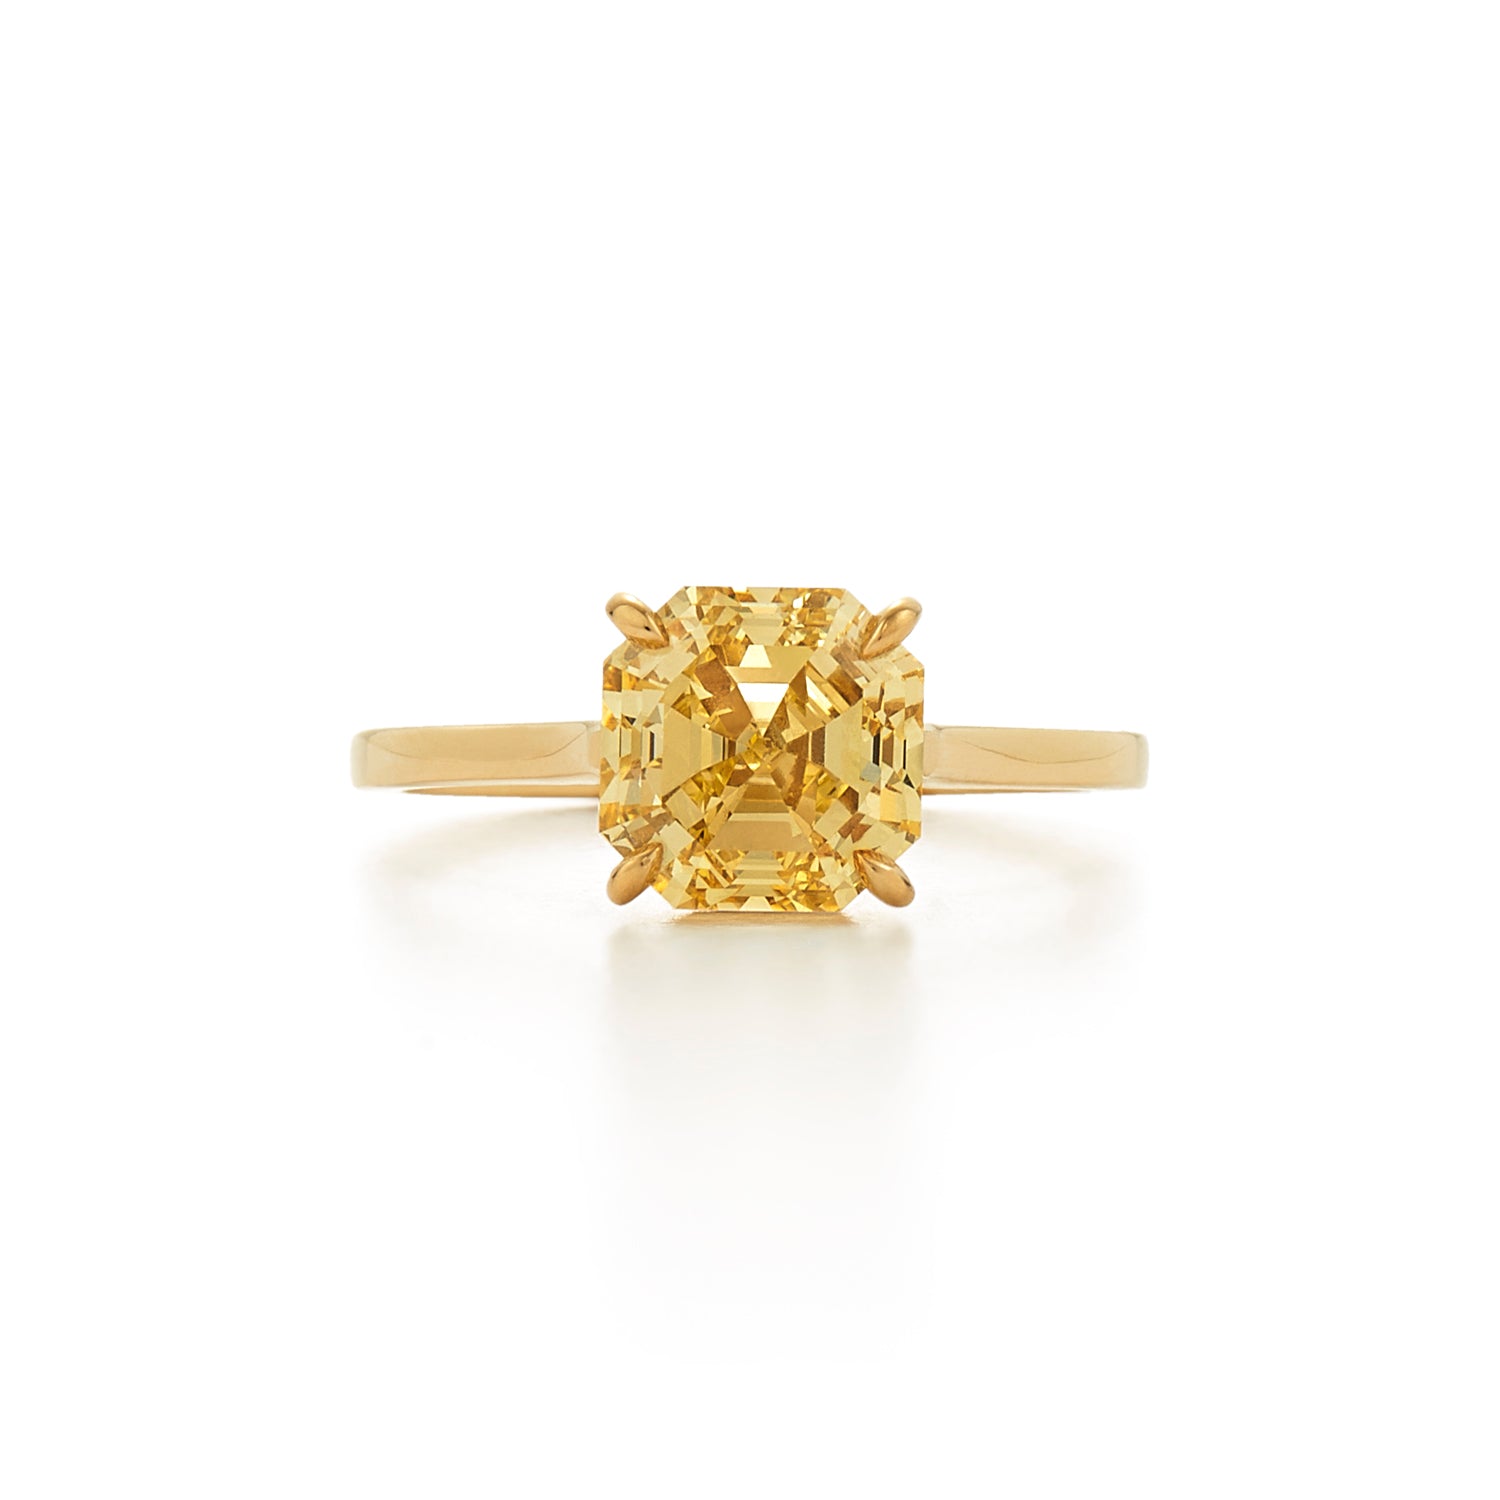 Kwiat Asscher Cut Yellow Diamond Engagement Ring